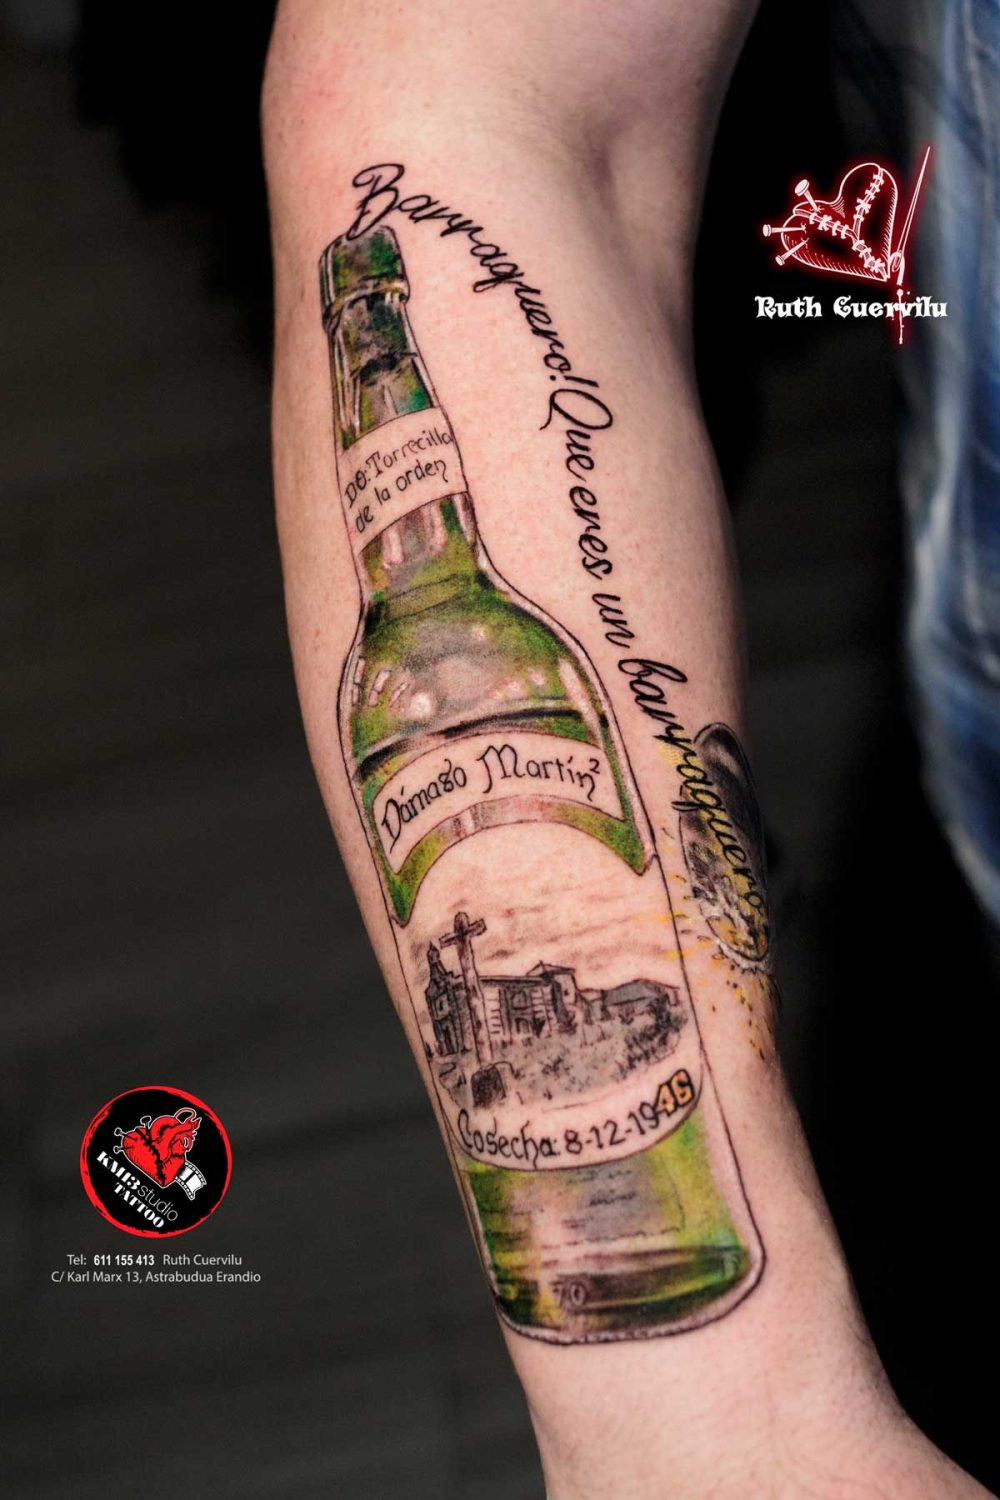 Tatuaje Botella Sidra, Ermita y vaso Sidra, barraquero - Ruth Cuervilu Tattoo - KM13 Studio - estudio de tatuajes erandio